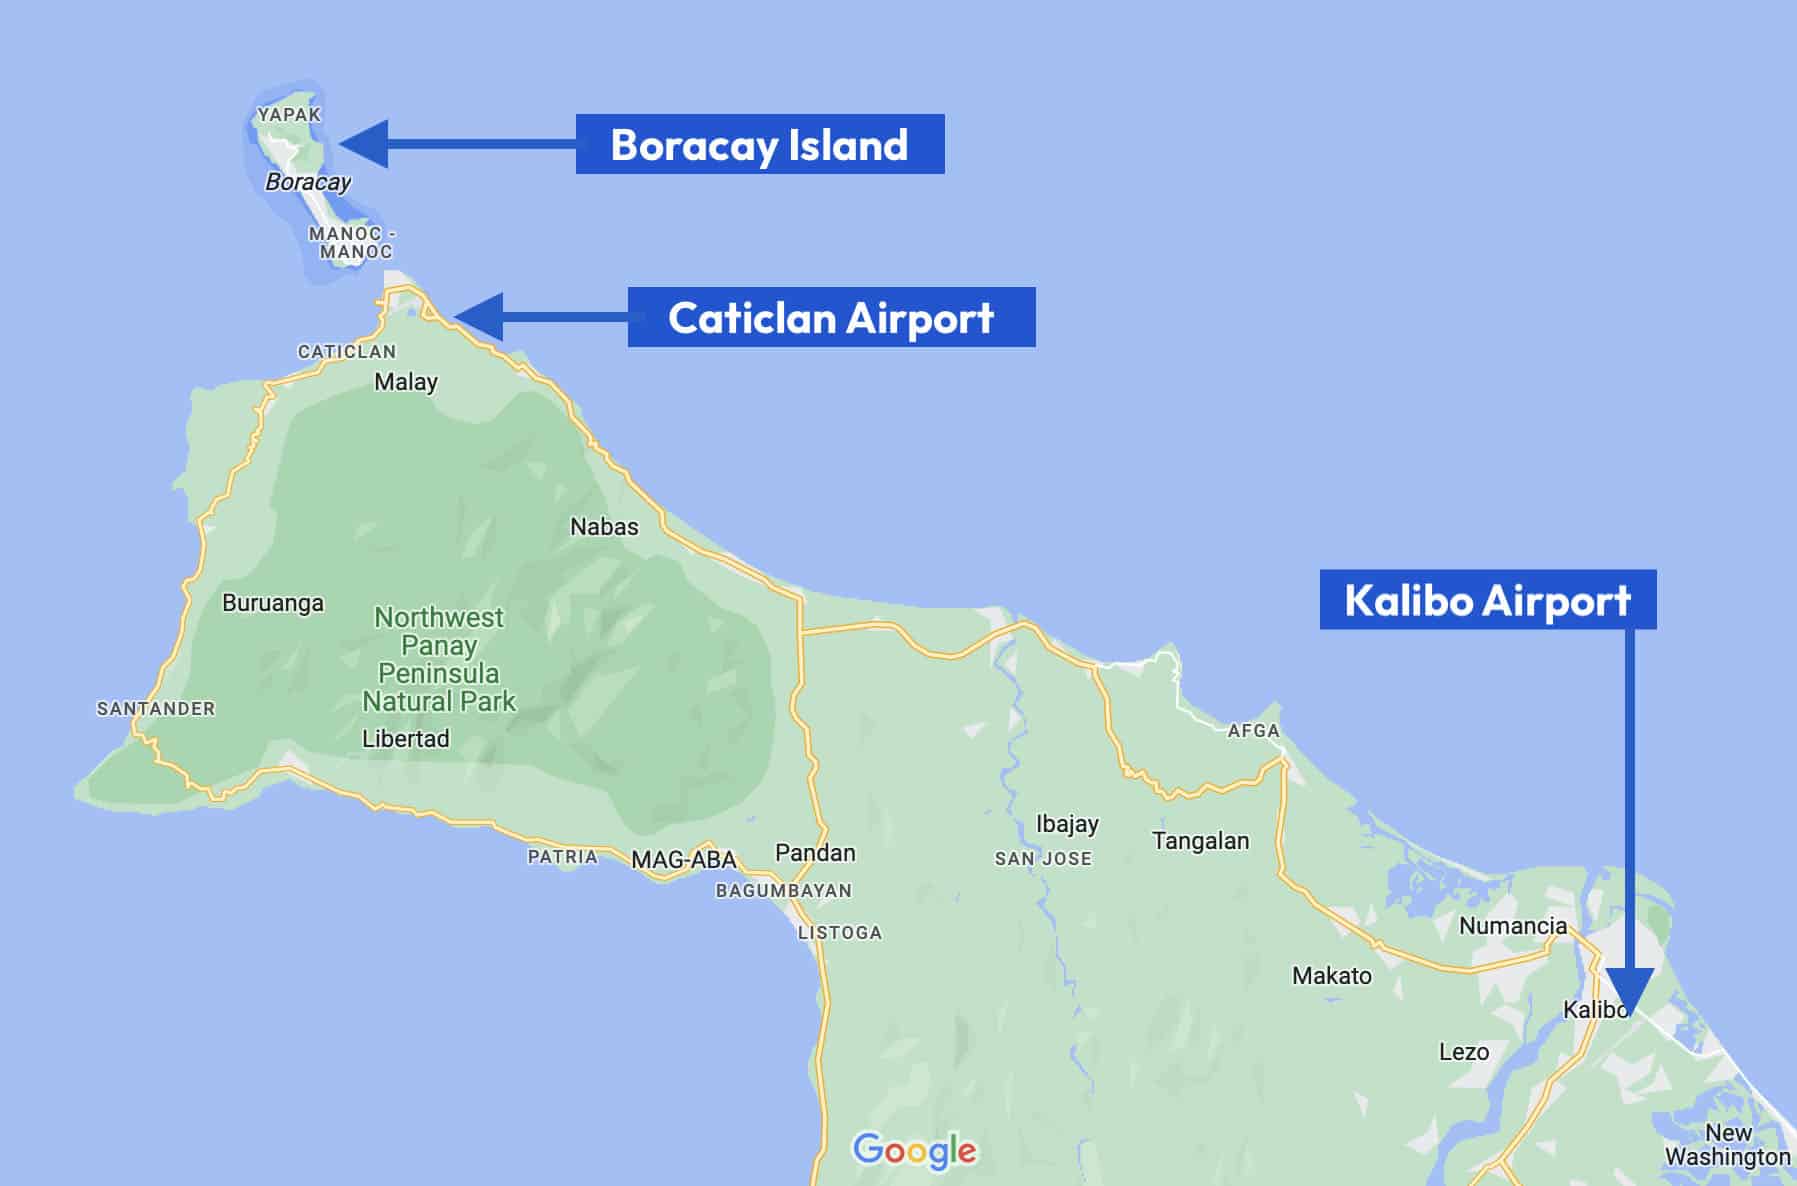 De afstand tot Boracay vanaf Kalibo Airport en Caticlan Airport